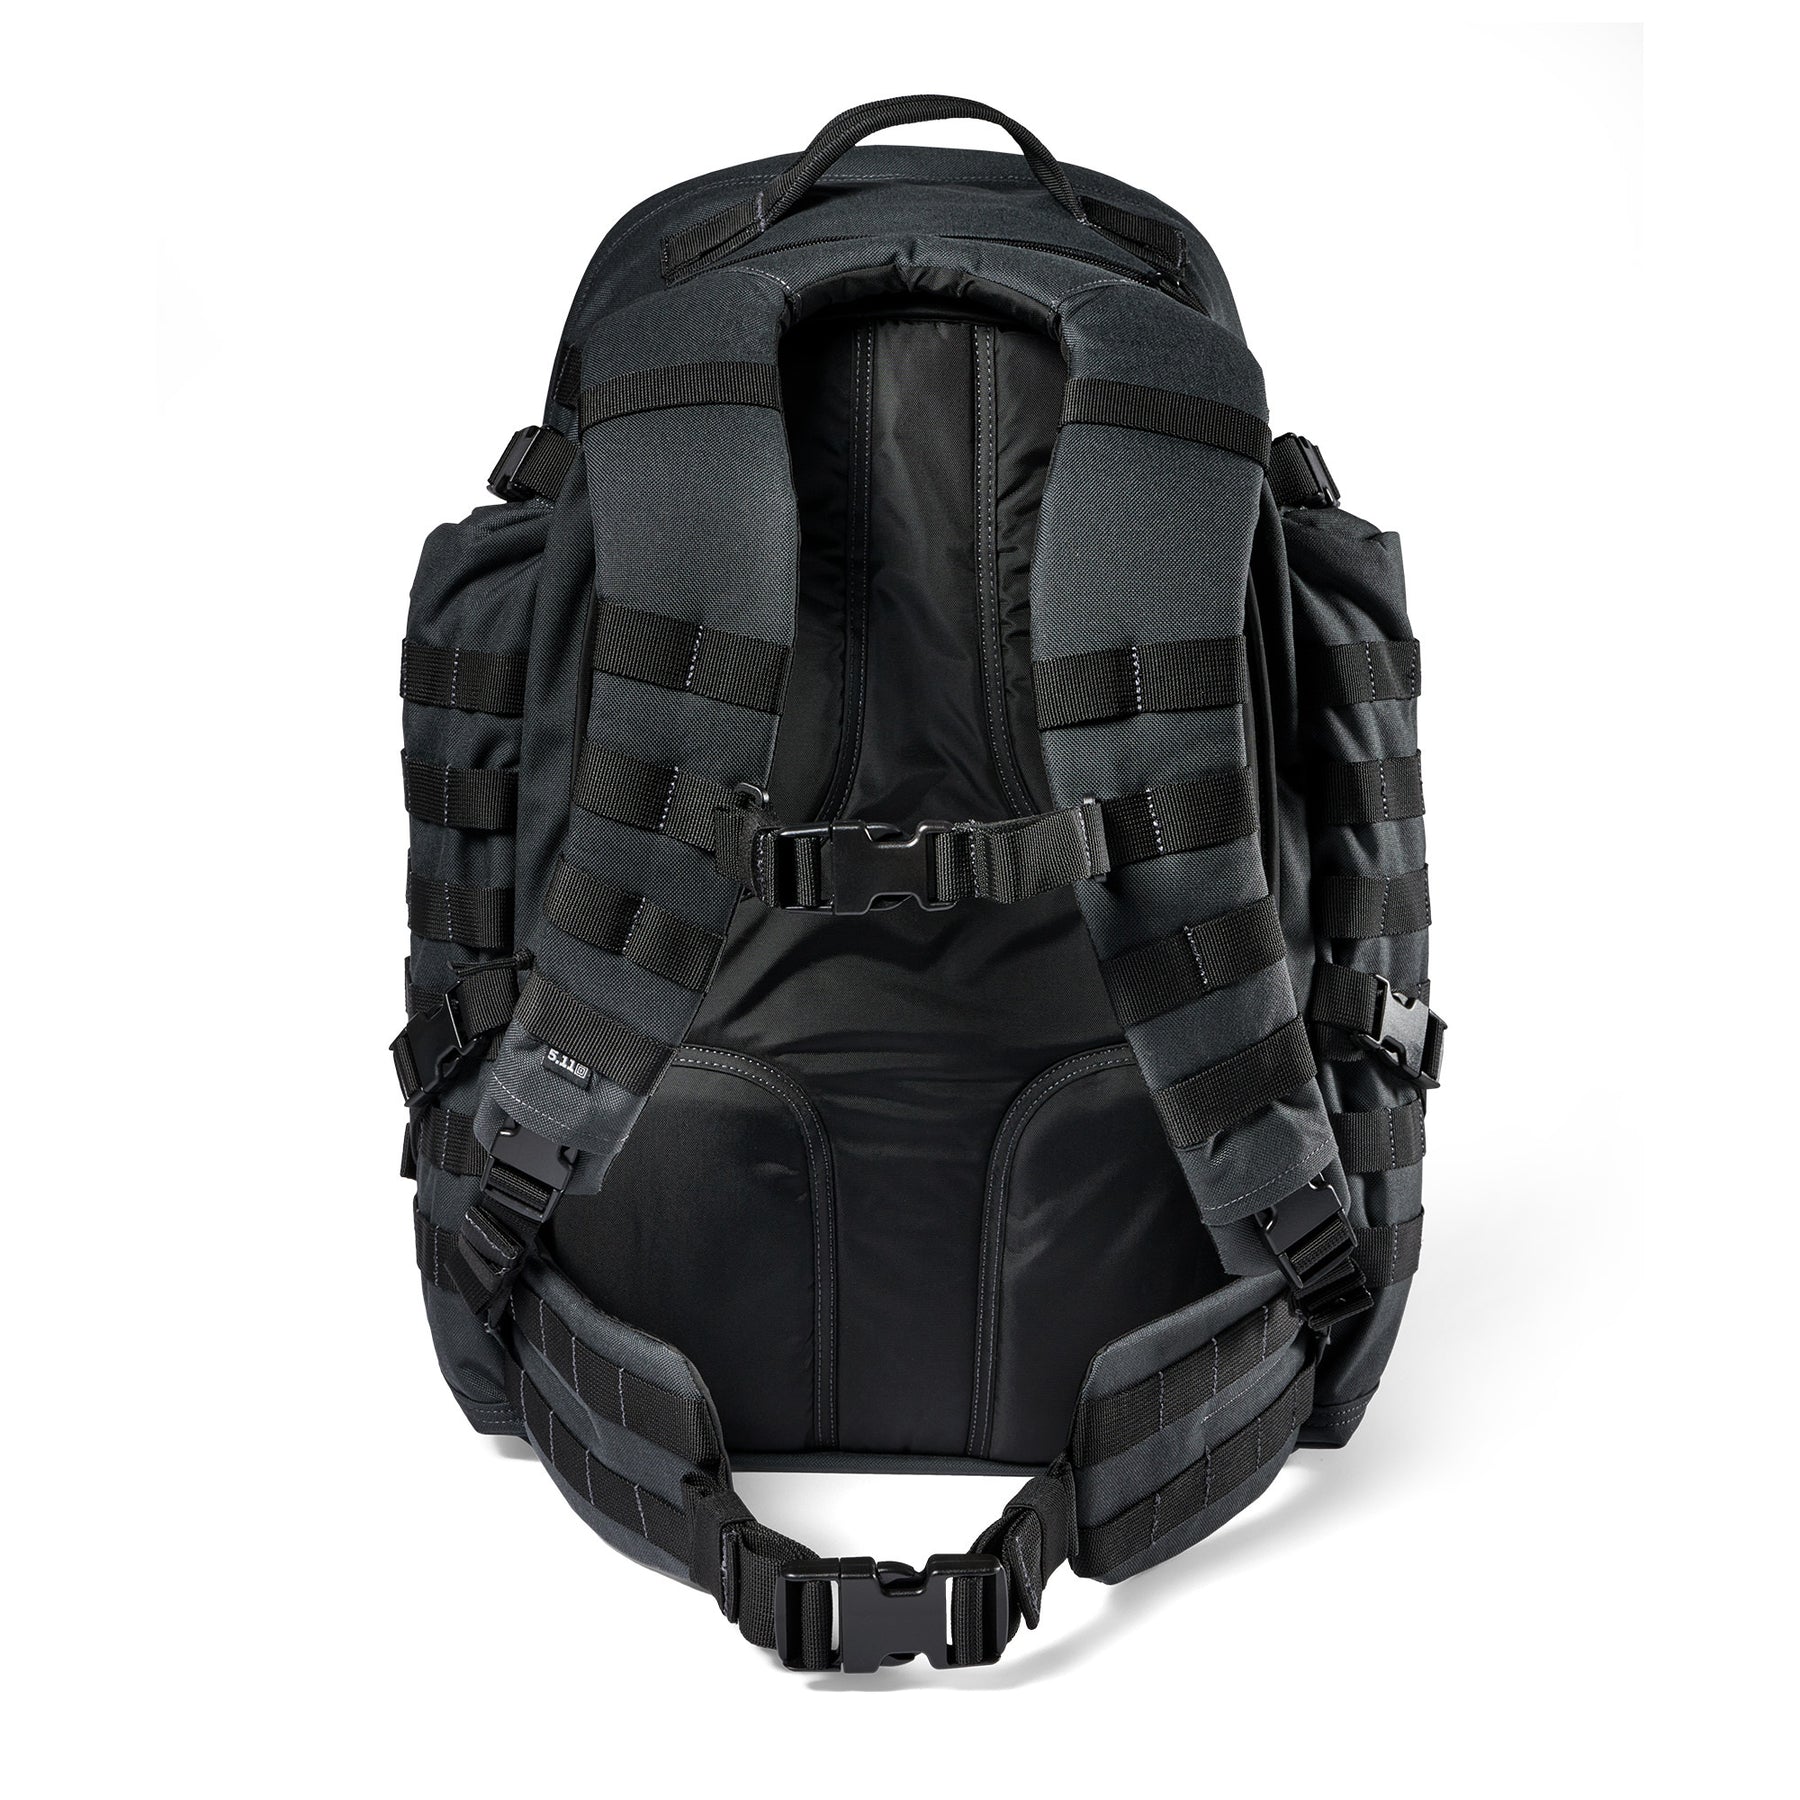 Zaino RUSH72 2.0 di 5.11 Tactical Double Tap (grigio e nero) - vista schienale e spallacci con cinturone